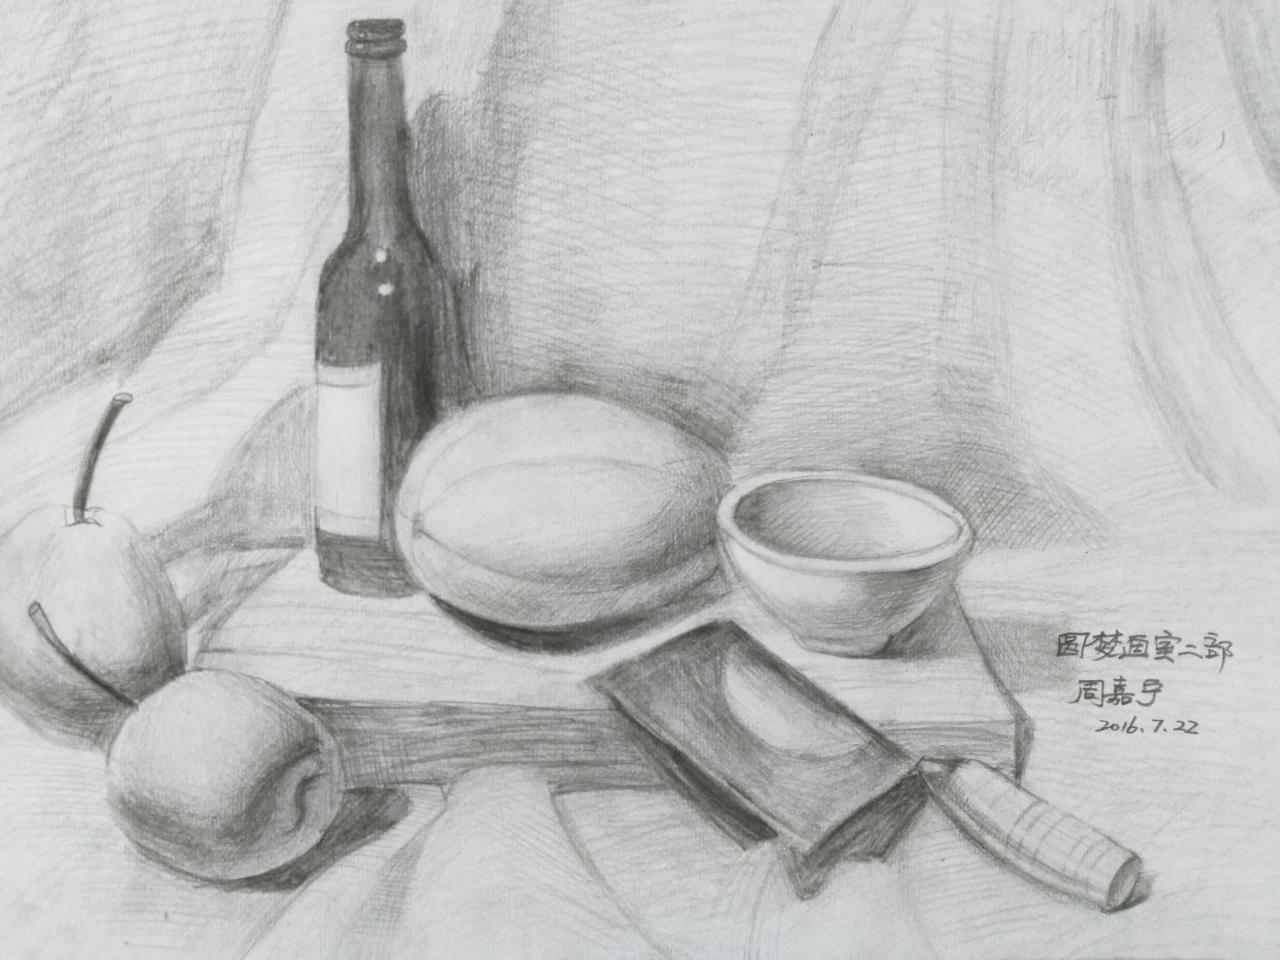 酒瓶、香瓜、碗、菜刀、菜板、梨 静物素描 周嘉宁画